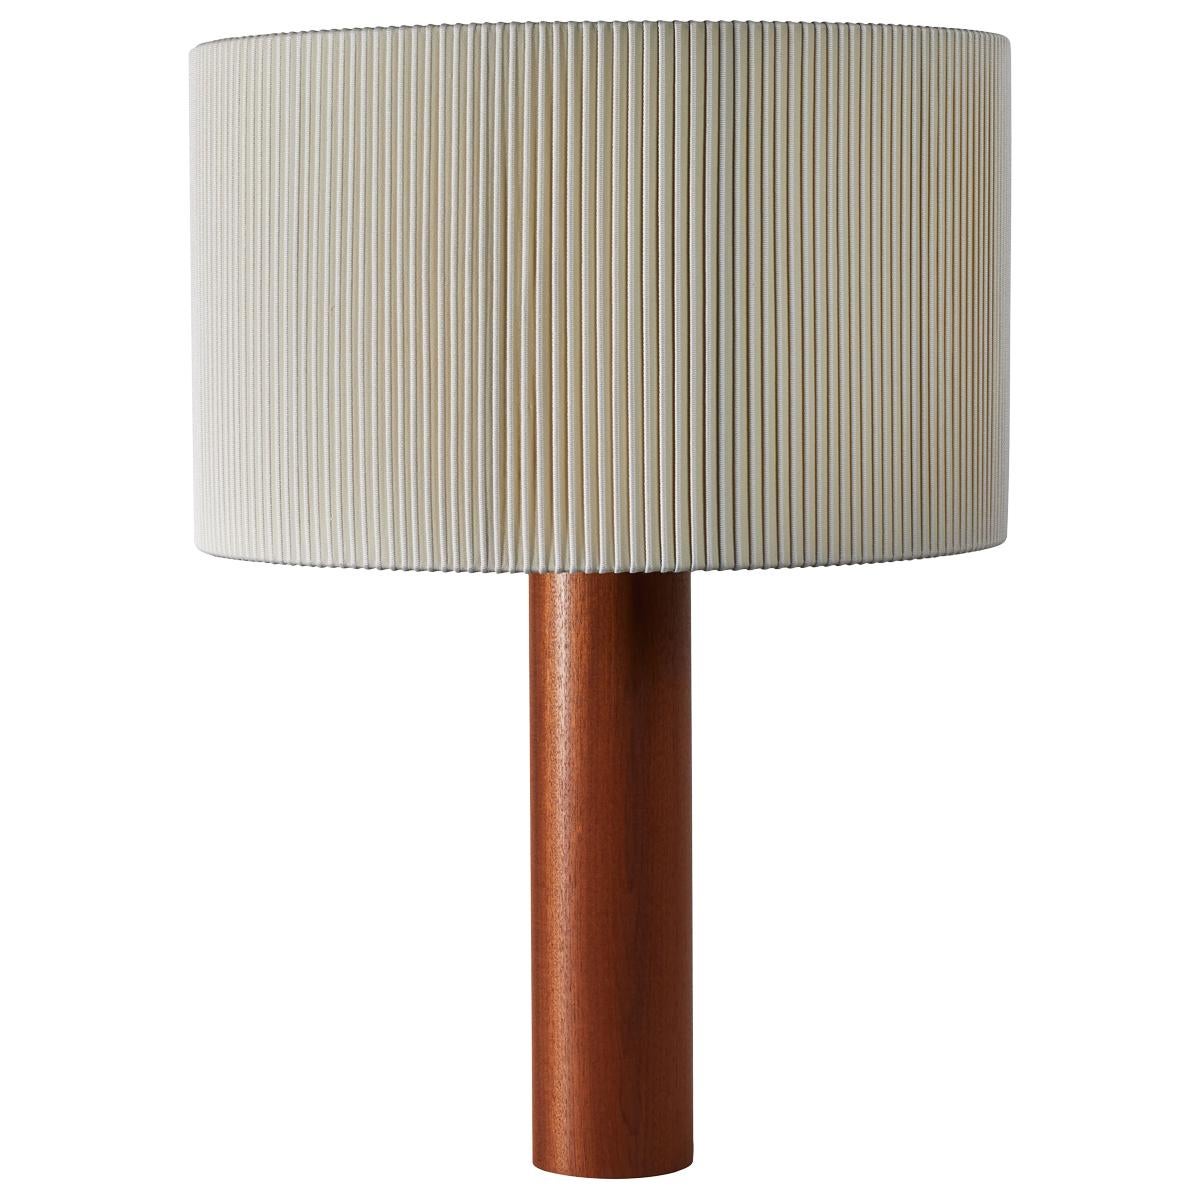 Moragas Table Lamp by Antoni De Moragas for Santa & Cole